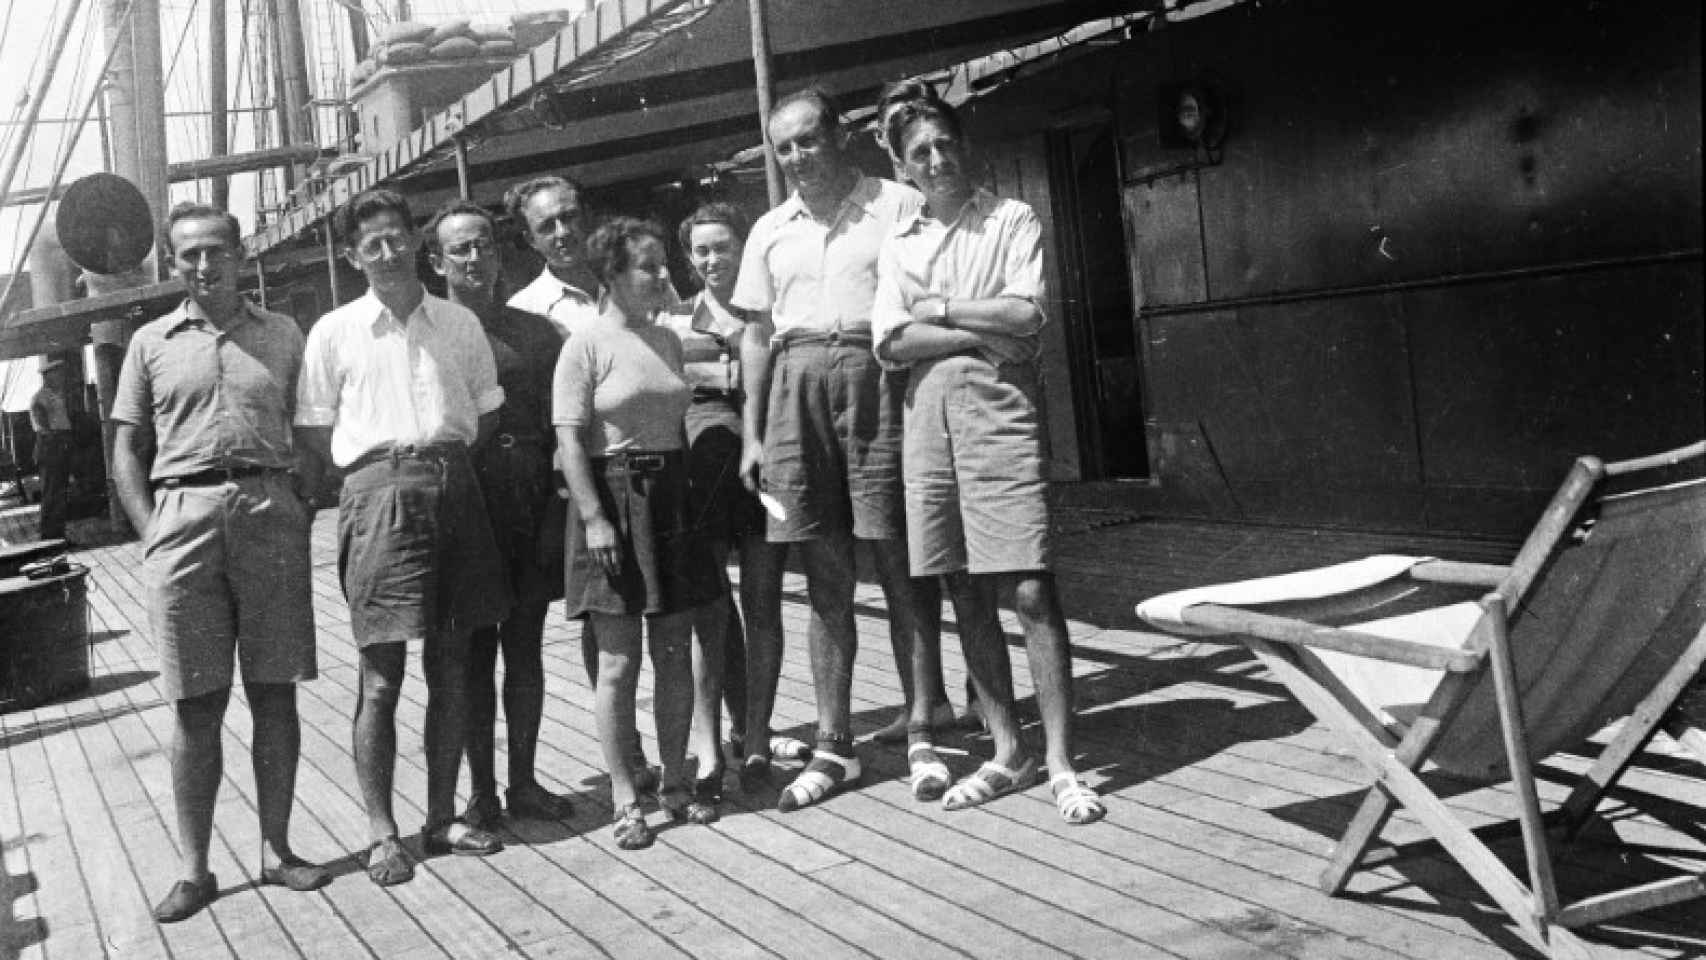 Fotografía del grupo de médicos en el velero 'Aeneas', 1939. Cortesía del archivo familiar Schön/Somogyi.